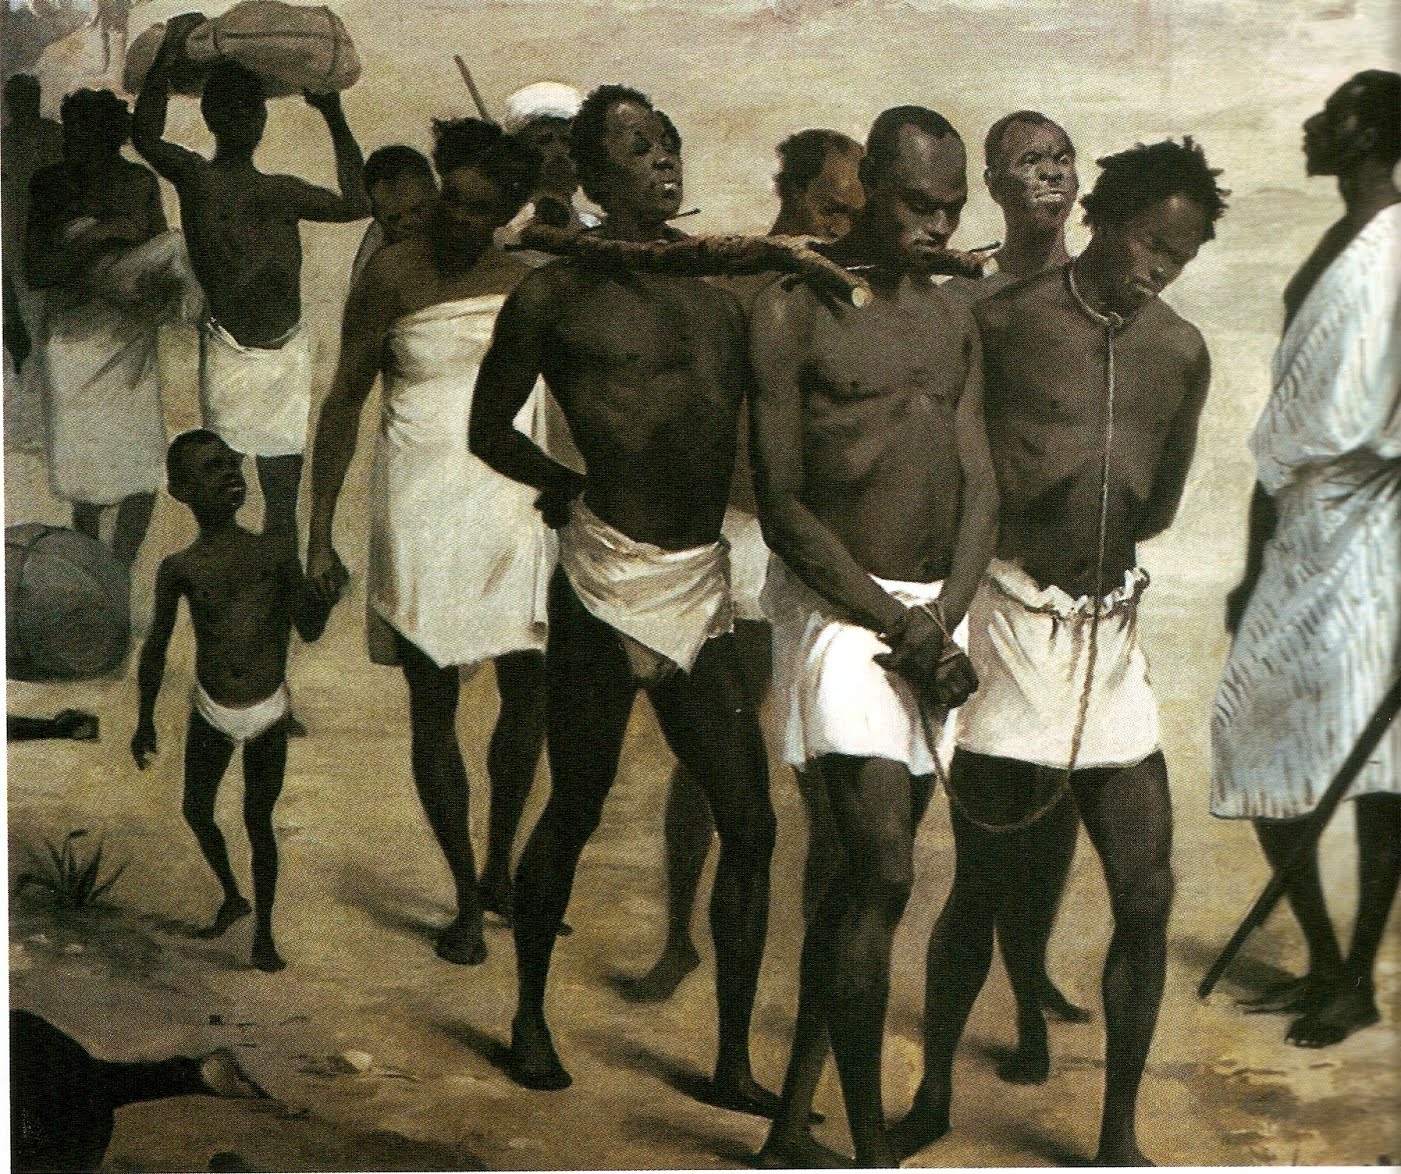 Что заставляли делать рабов. Работорговля в Африке 19 век. Караван невольников Африка. Работорговля Африки 18 века. Африка 19 века работорговля детьми.